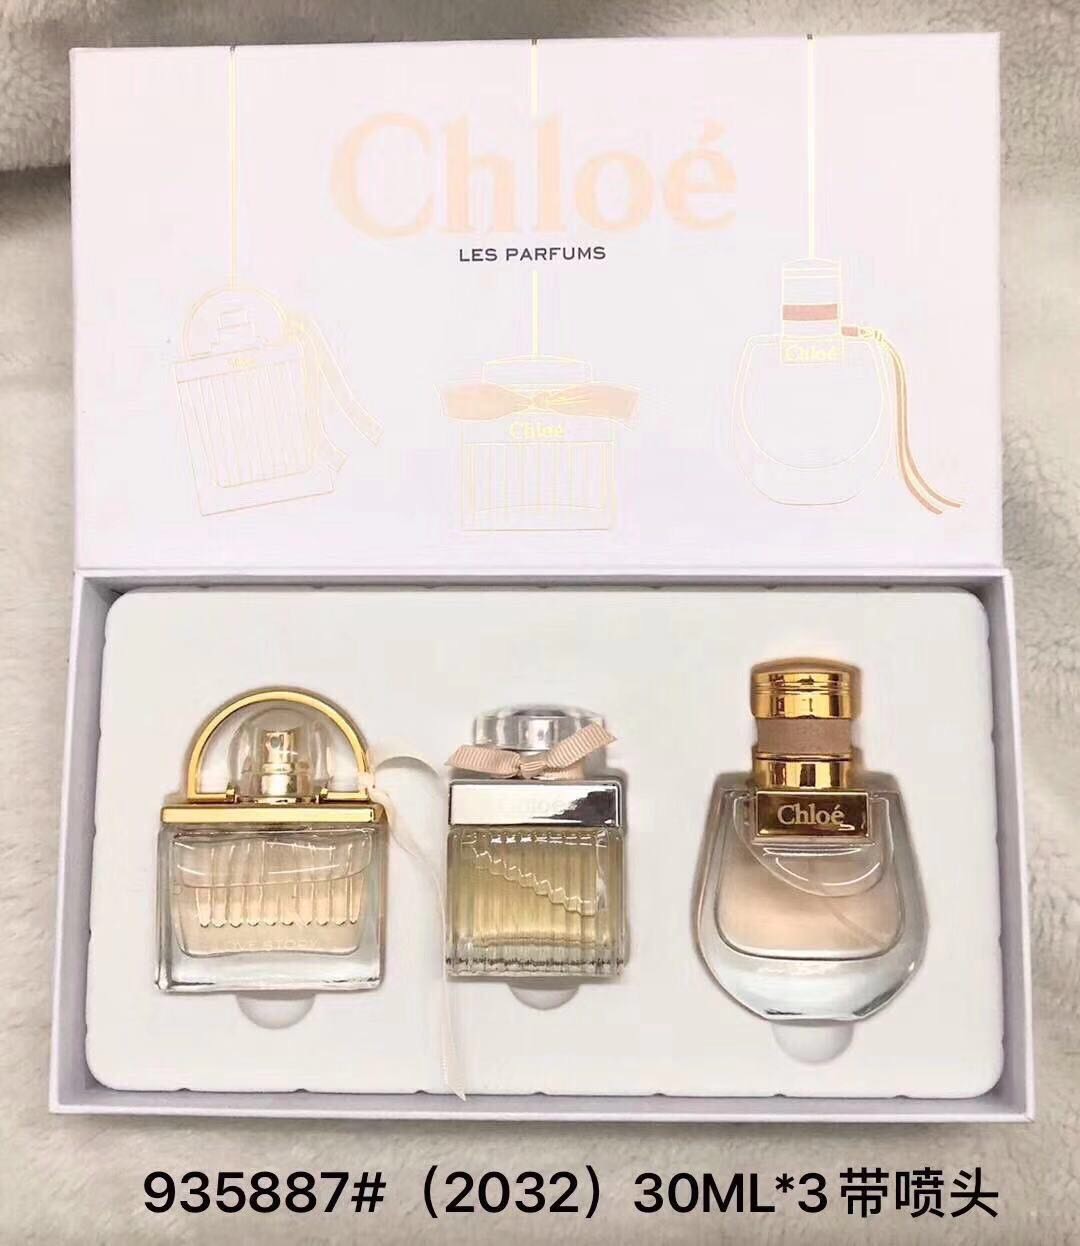 น้ำหอมเทสเตอร์หัวฉีด Chloe Collection tester set กิ๊ฟเซ็ท 30ml.×3ชิ้นแพคกล่องของขวัญสวยหรู